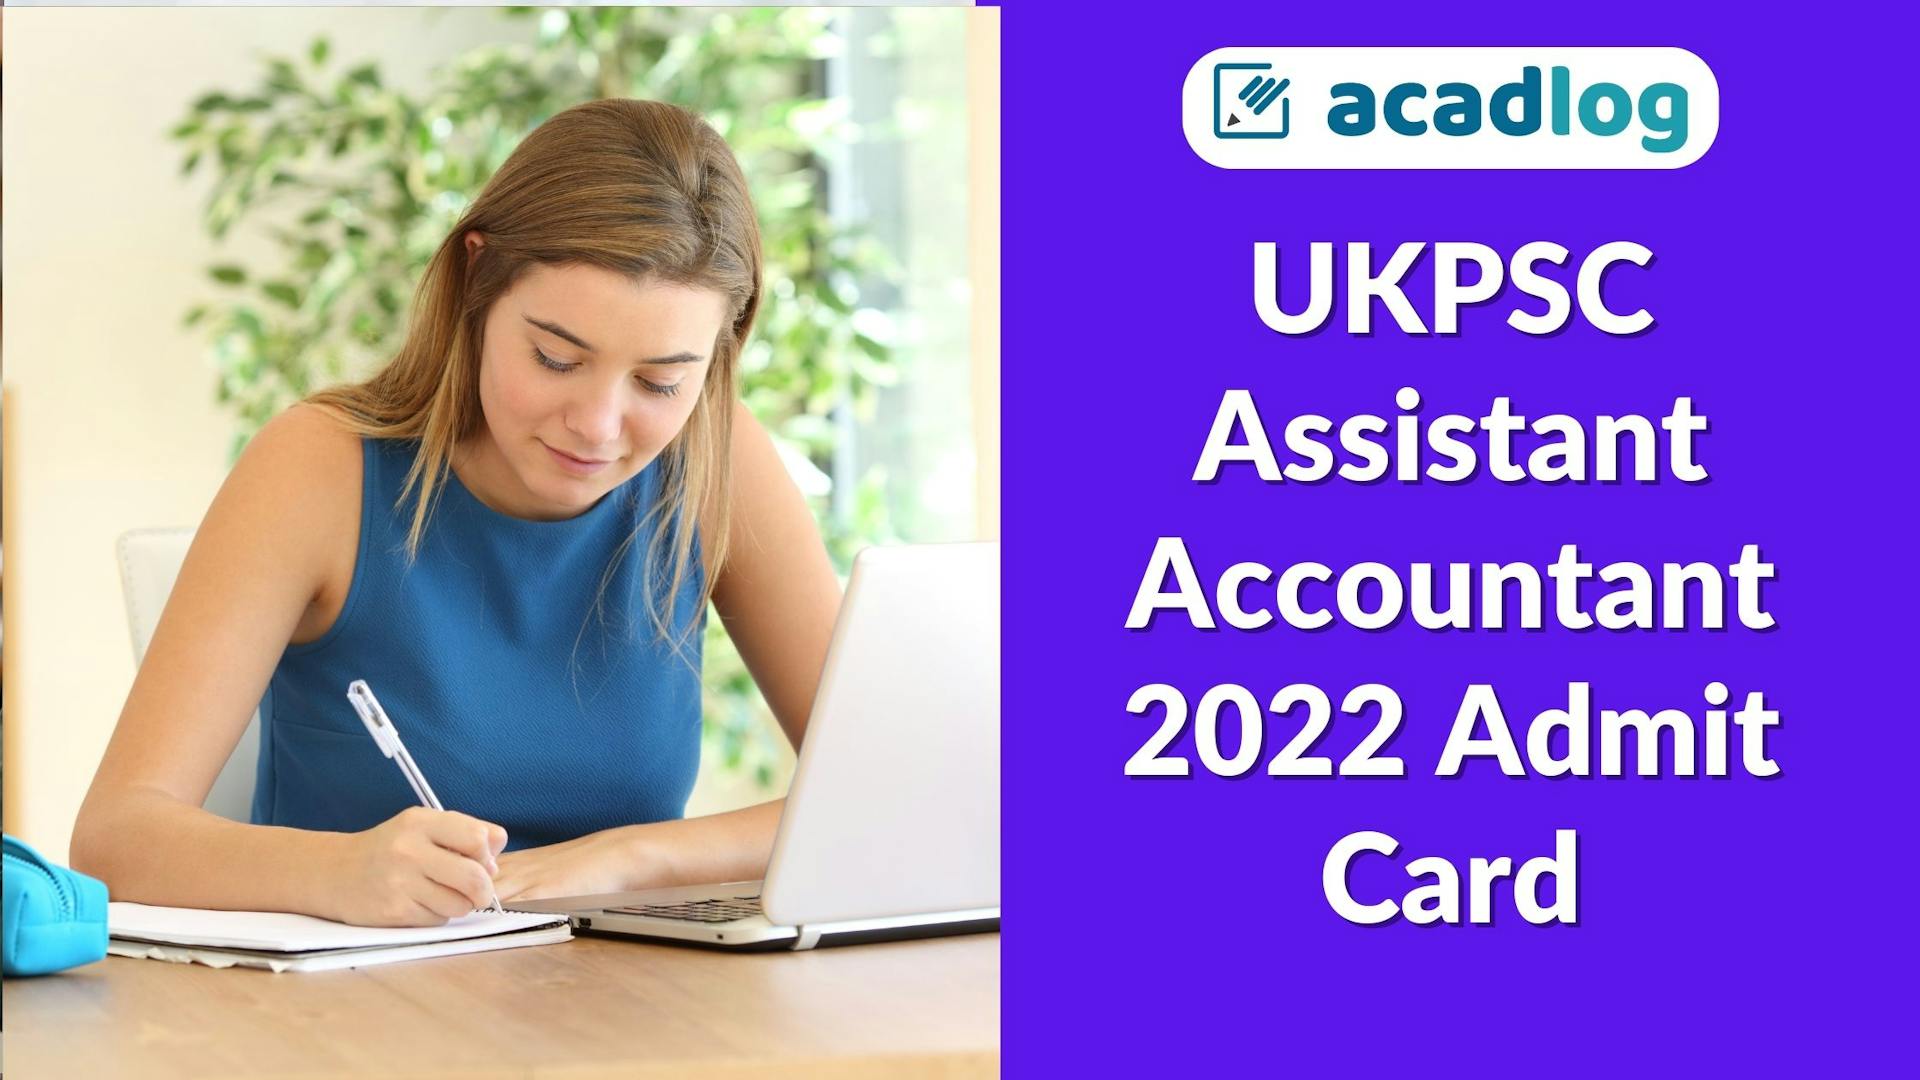 Acadlog: Uttarakhand UKPSC Assistant Accountant Recruitment 2022 Admit Card for 07/05/2023 Exam for 661 Post